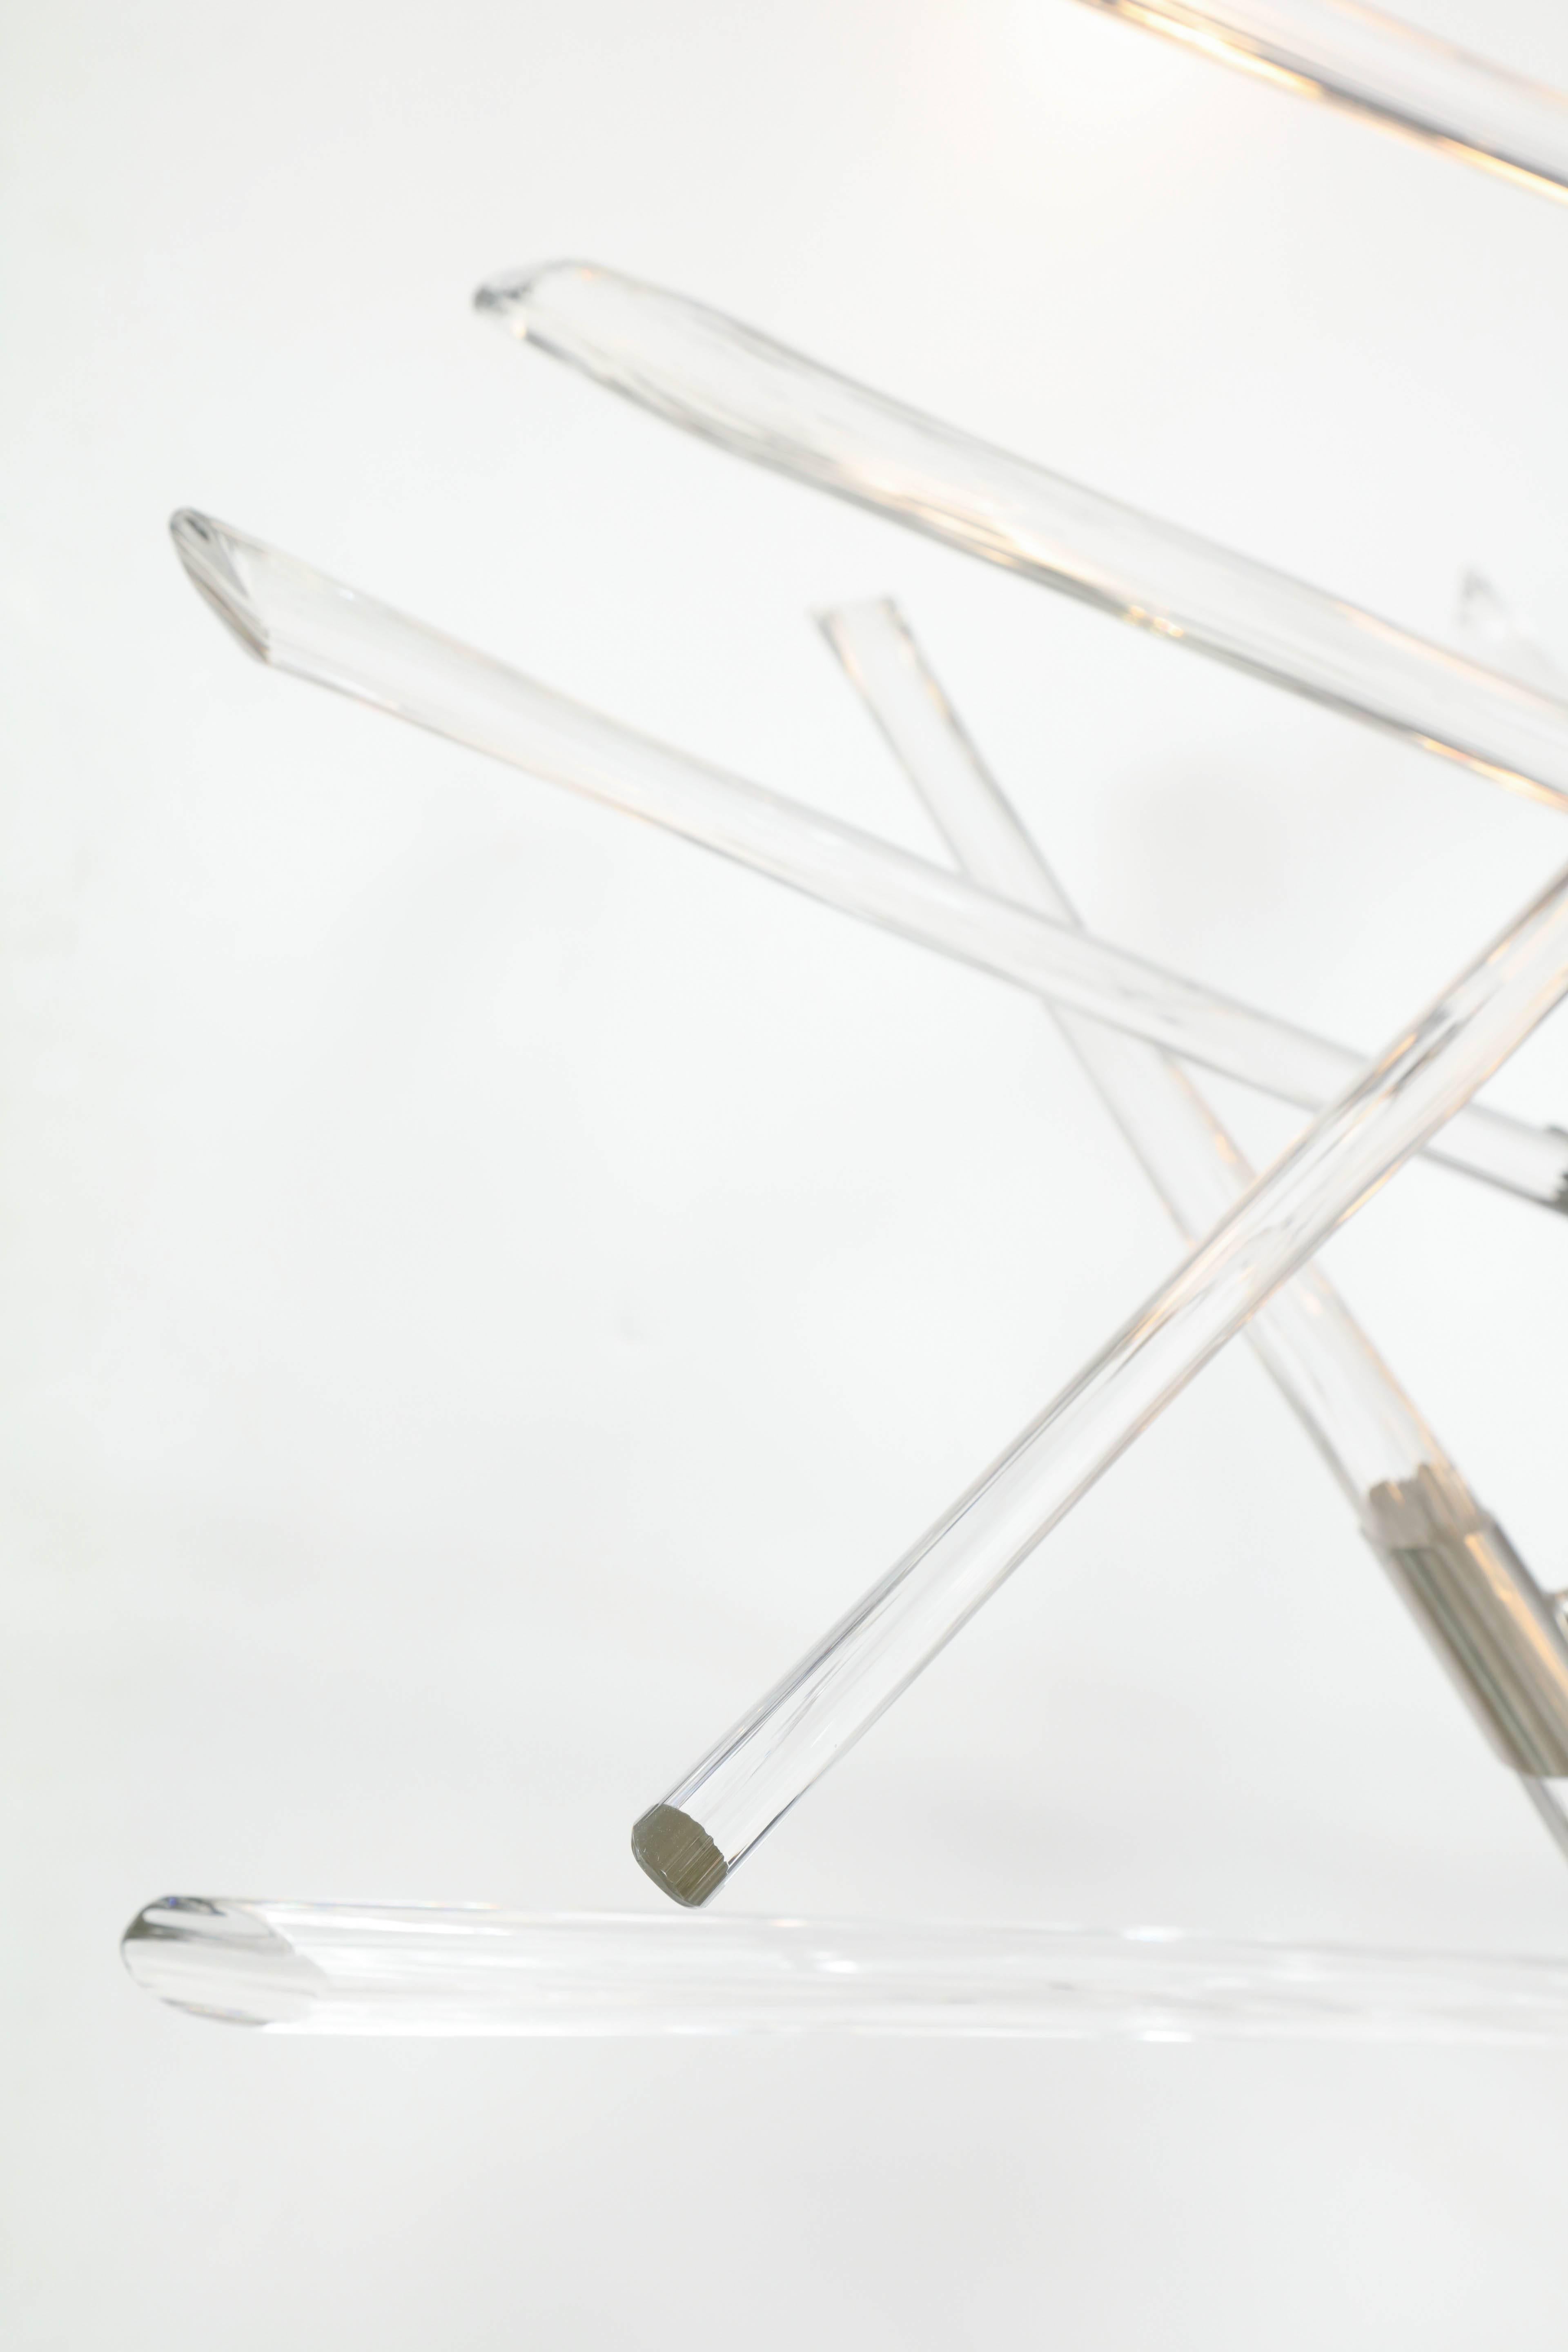 Modern Barry Entner Tangent Glass and Metal Chandelier, 2016 For Sale